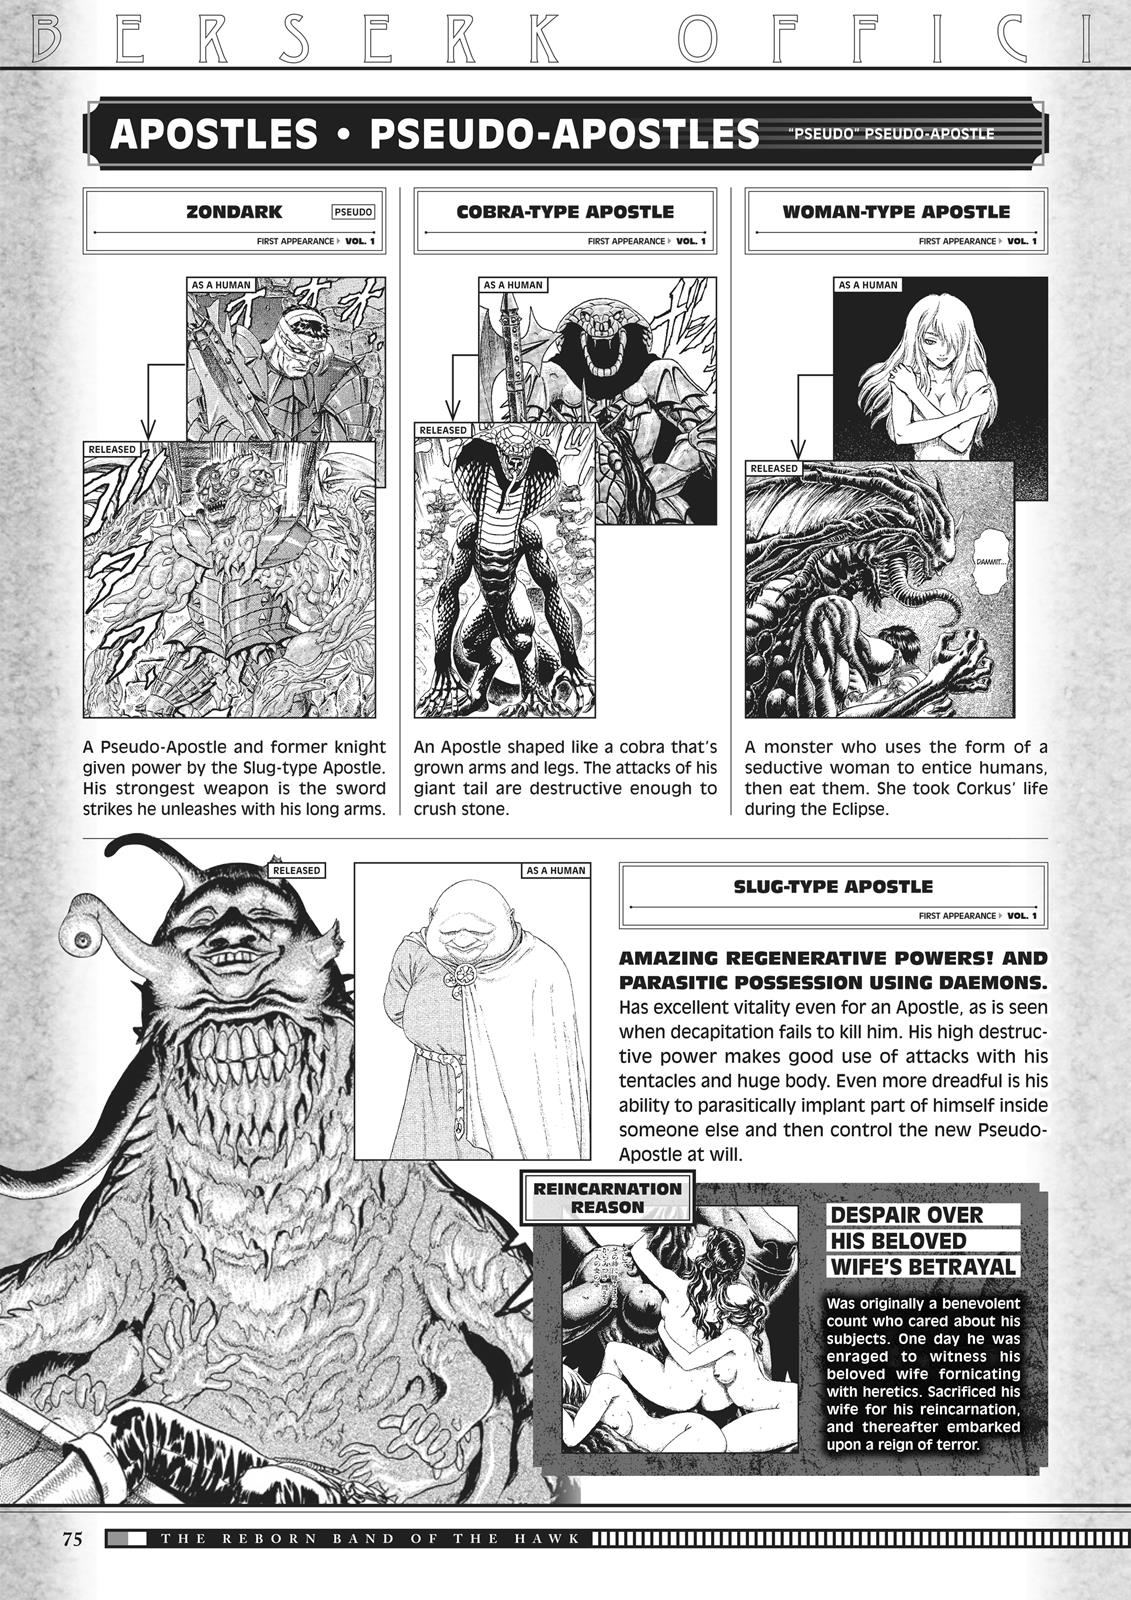 Berserk Manga Chapter 350.5 image 073